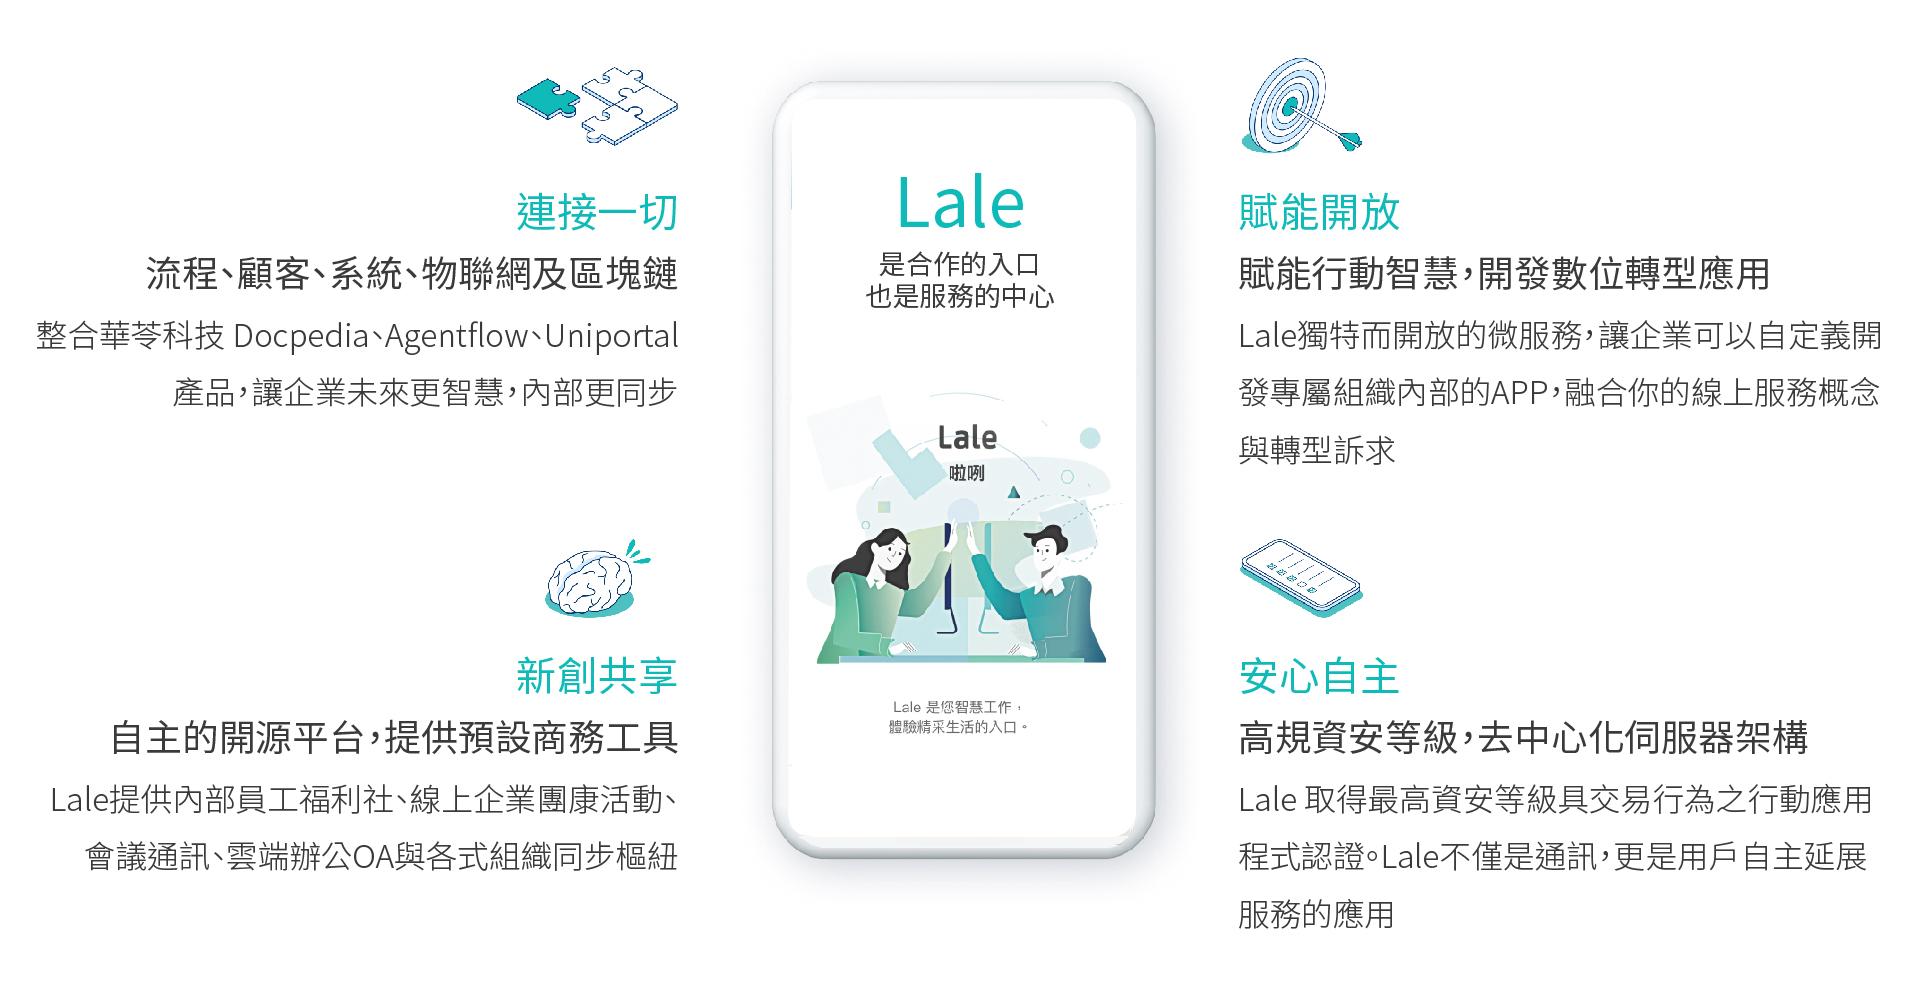 Lale是合作的入口也是服務的中心，更是共研共創共享的平台。